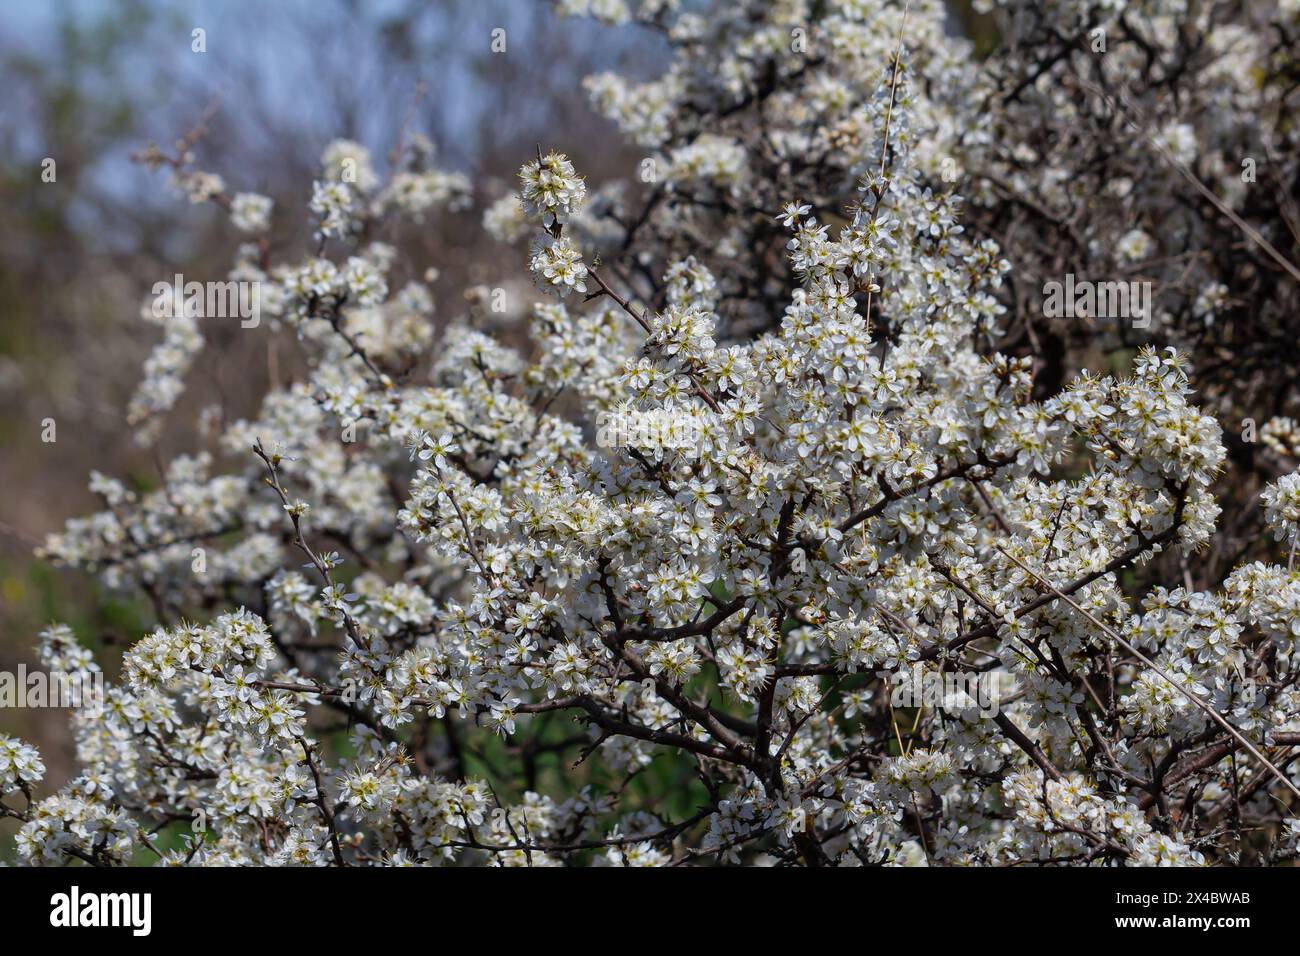 Prunus spinosa, chiamato spina nera o sciabola, è una specie di pianta fiorita della famiglia delle rosate Rosaceae. Prunus spinosa, chiamato spina nera o albero di sciabola Foto Stock